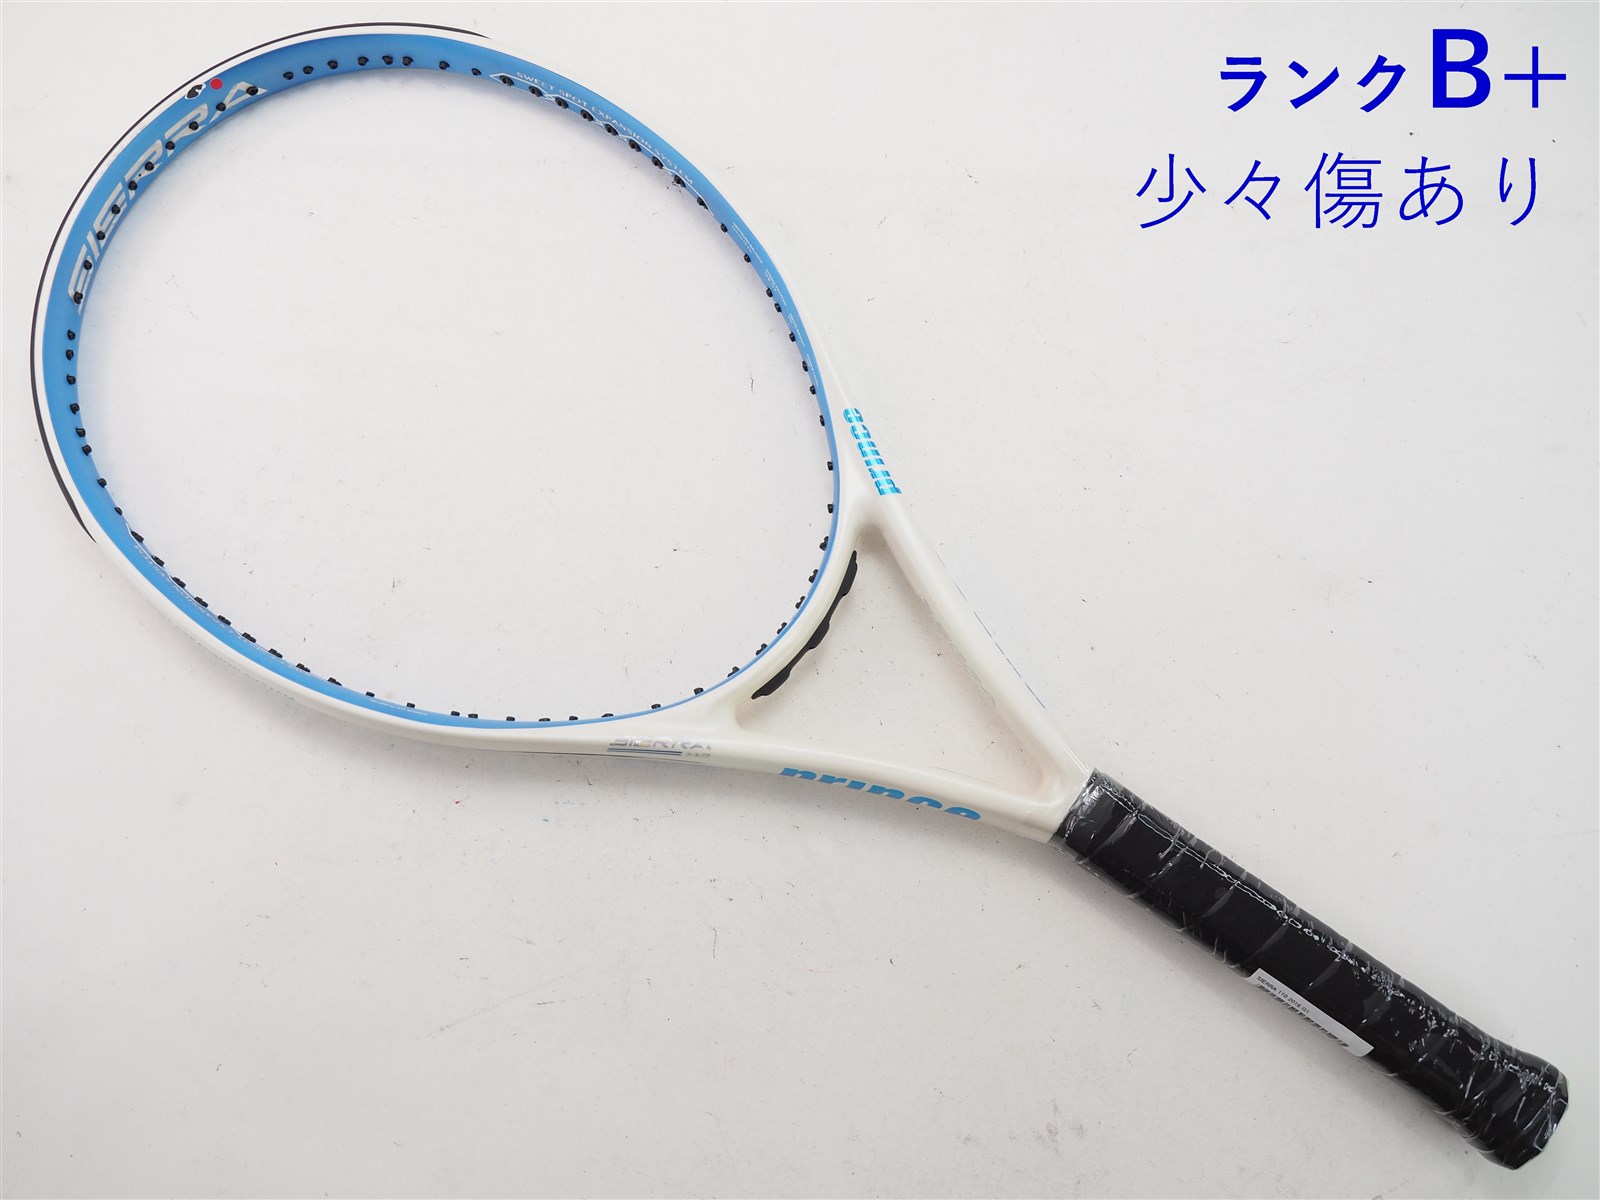 テニスラケット プリンス シエラ 100 2016年モデル【多数グロメット割れ有り】 (G2)PRINCE SIERRA 100 2016